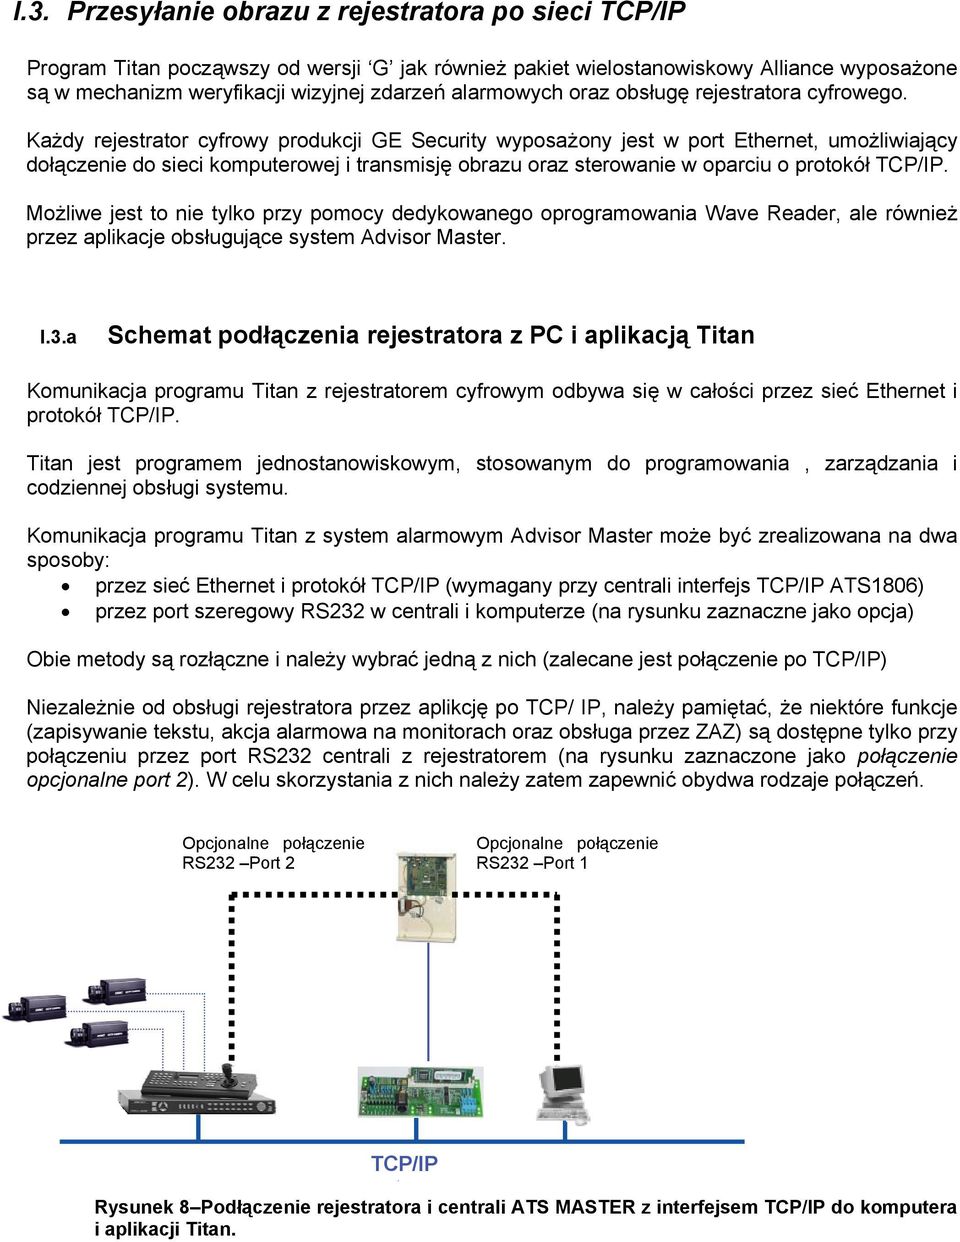 Każdy rejestrator cyfrowy produkcji GE Security wyposażony jest w port Ethernet, umożliwiający dołączenie do sieci komputerowej i transmisję obrazu oraz sterowanie w oparciu o protokół TCP/IP.